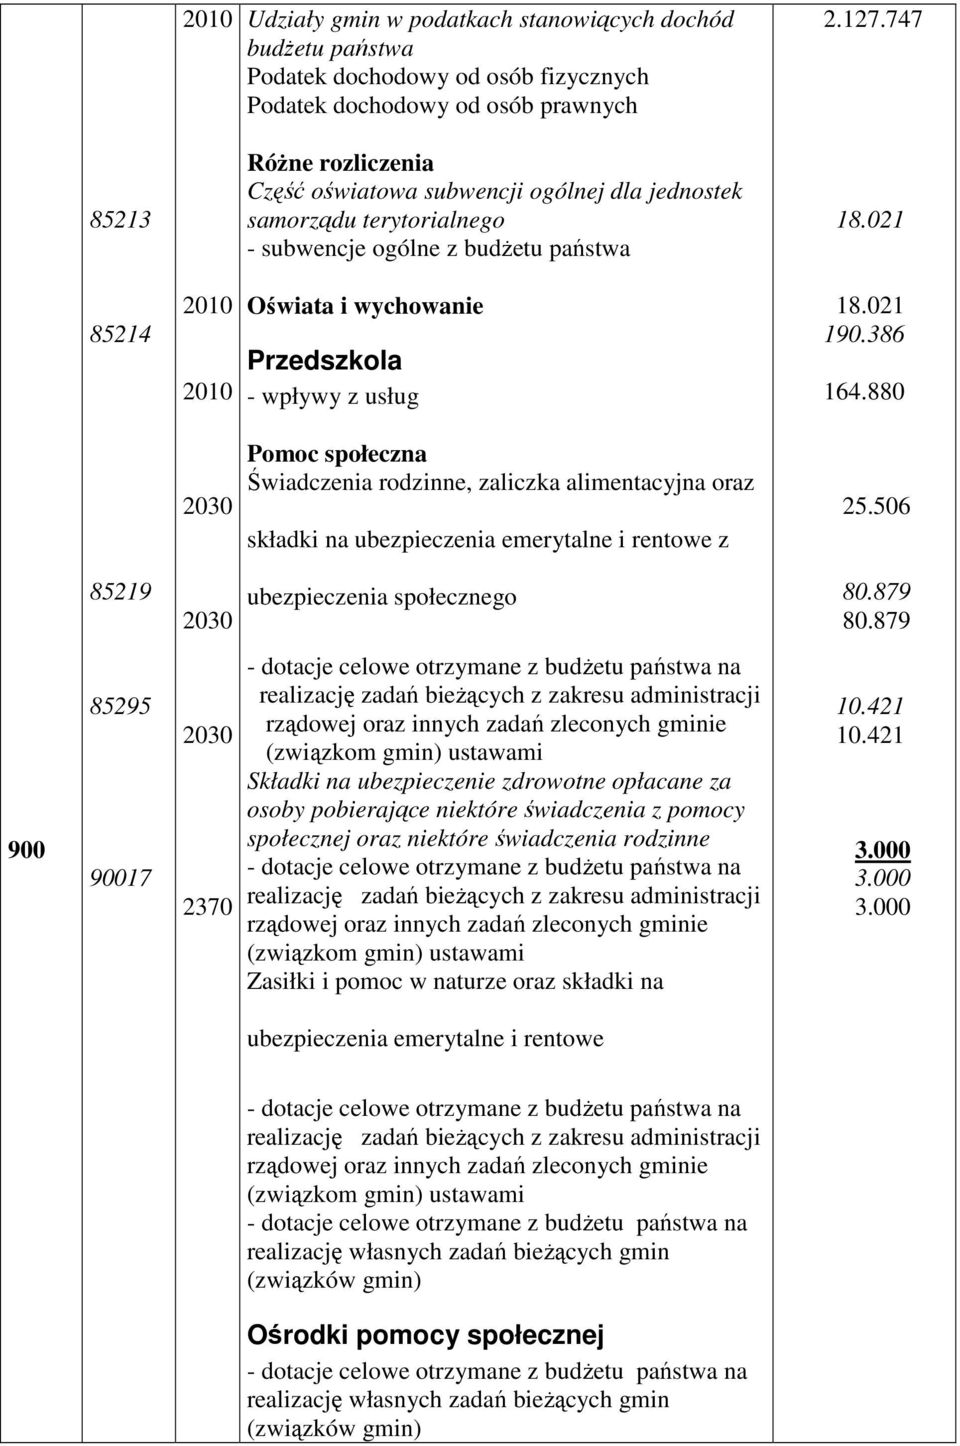 021 85214 2010 2010 Oświata i wychowanie Przedszkola - wpływy z usług 18.021 190.386 164.